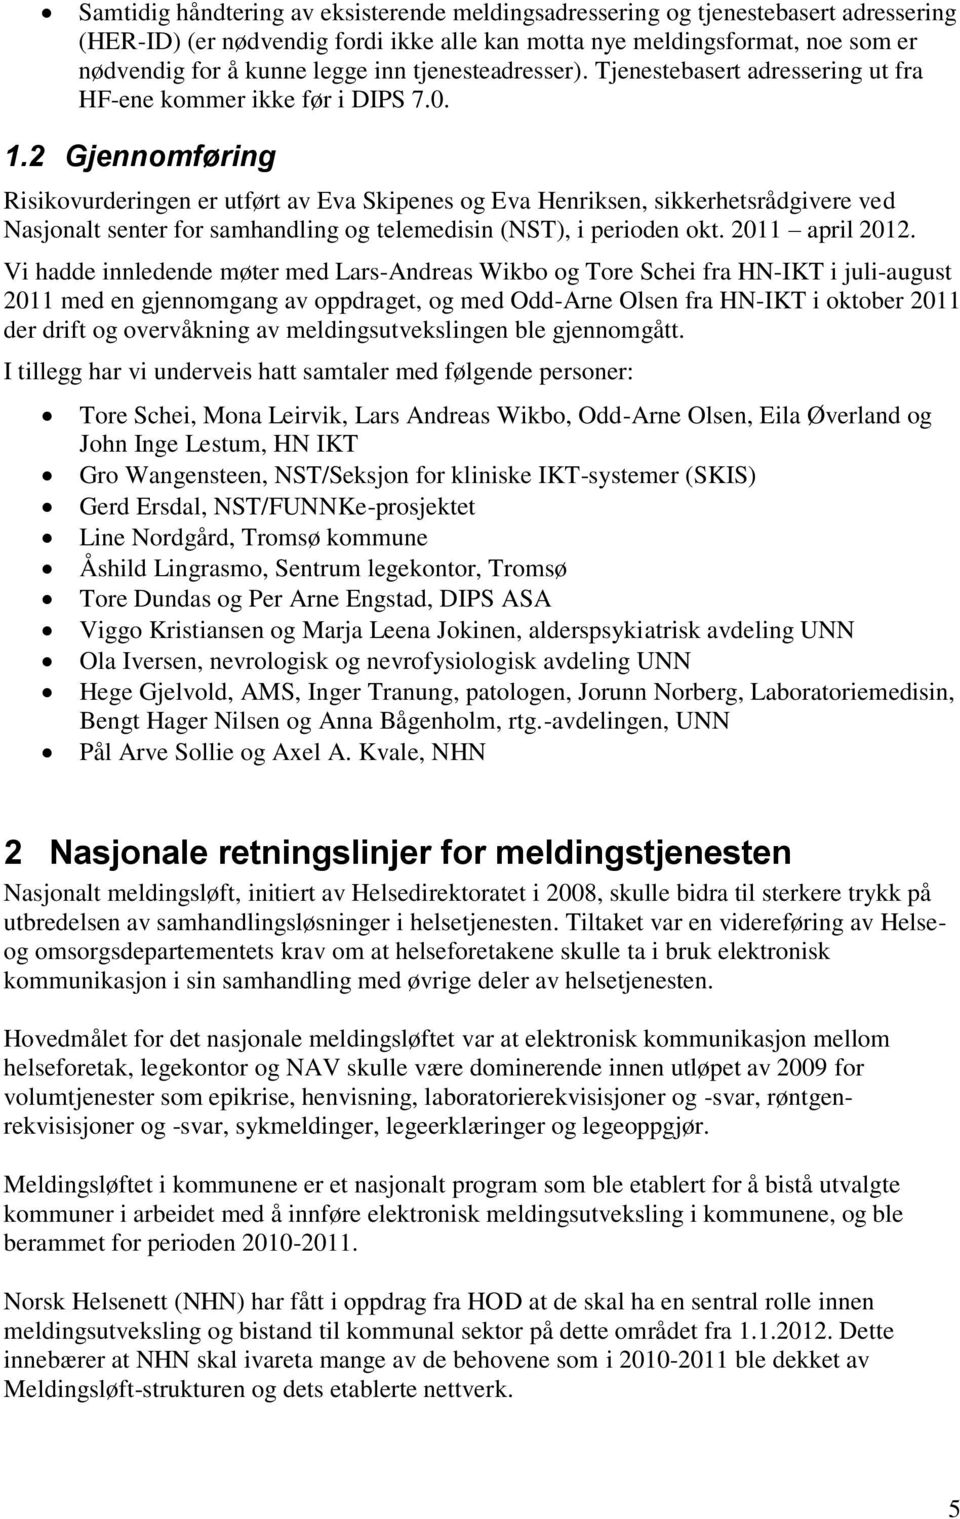 2 Gjennomføring Risikovurderingen er utført av Eva Skipenes og Eva Henriksen, sikkerhetsrådgivere ved Nasjonalt senter for samhandling og telemedisin (NST), i perioden okt. 2011 april 2012.